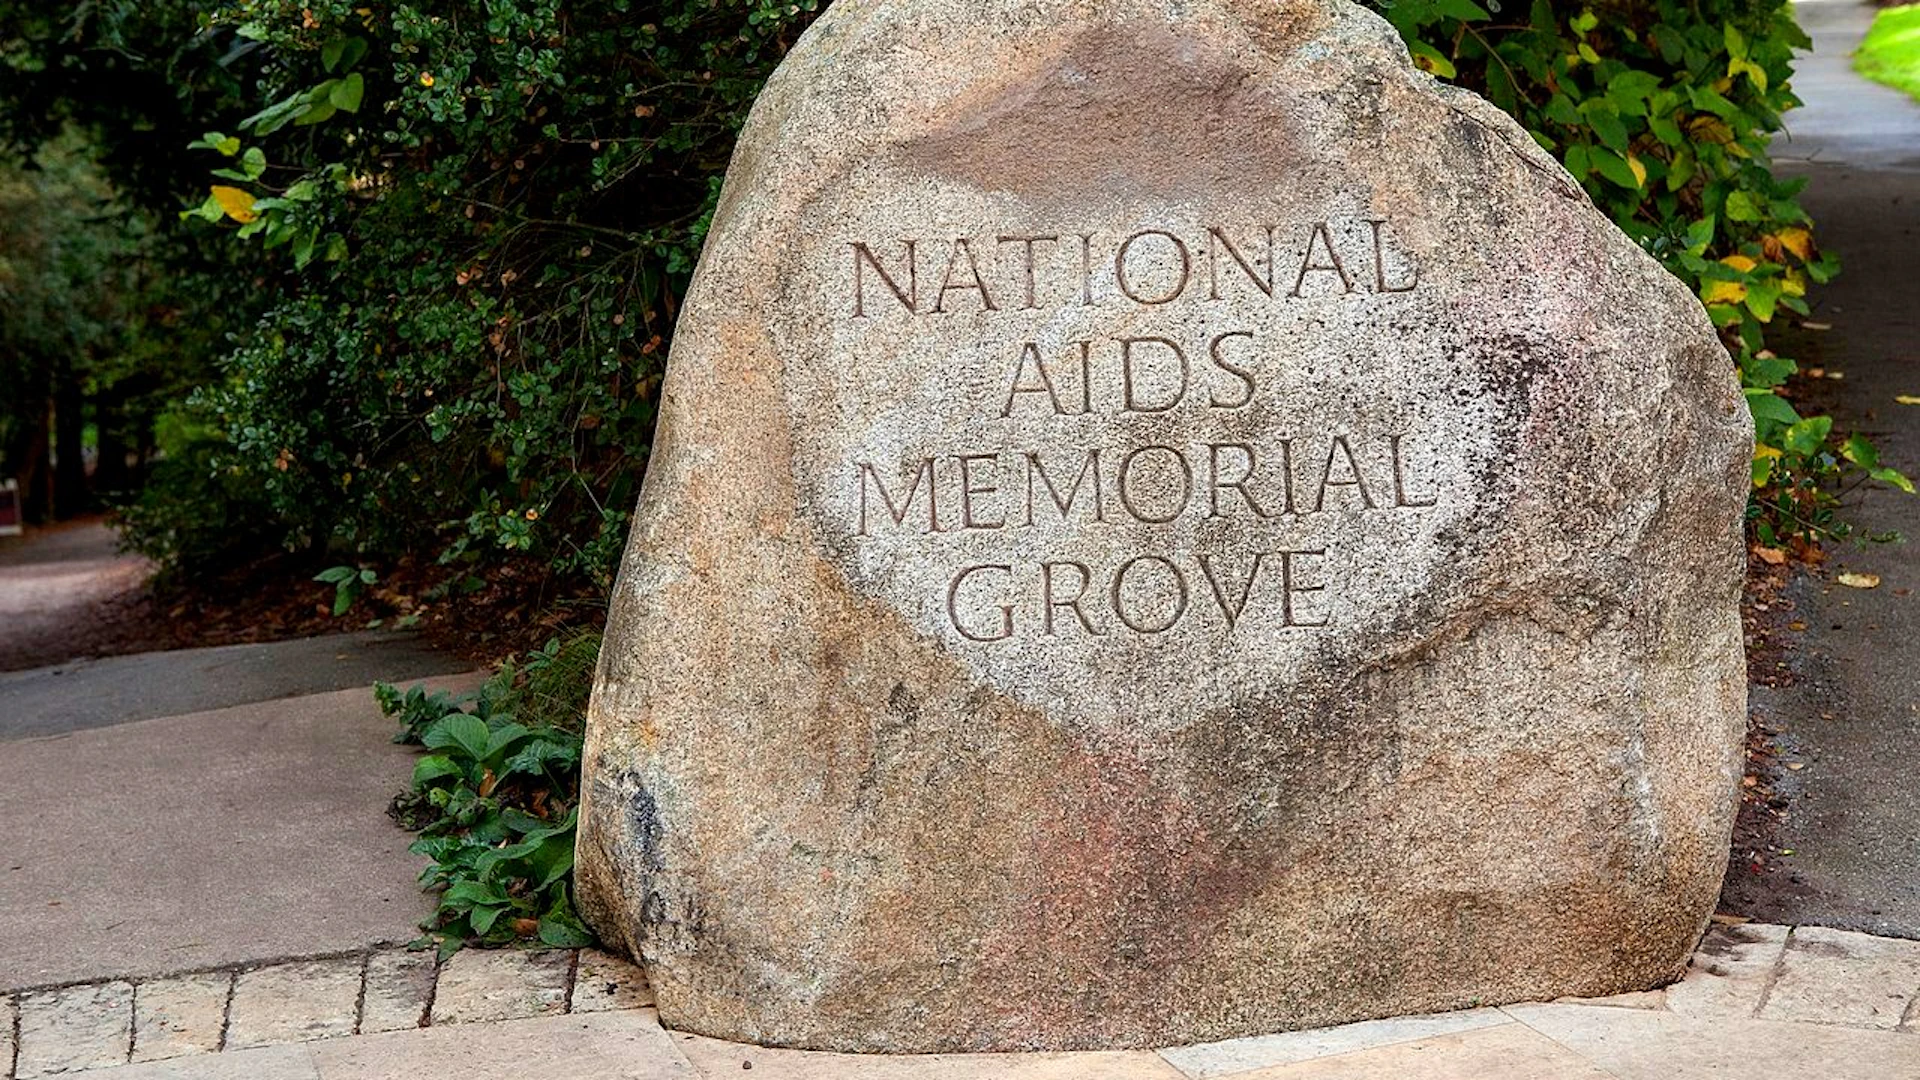 National AIDS Memorial